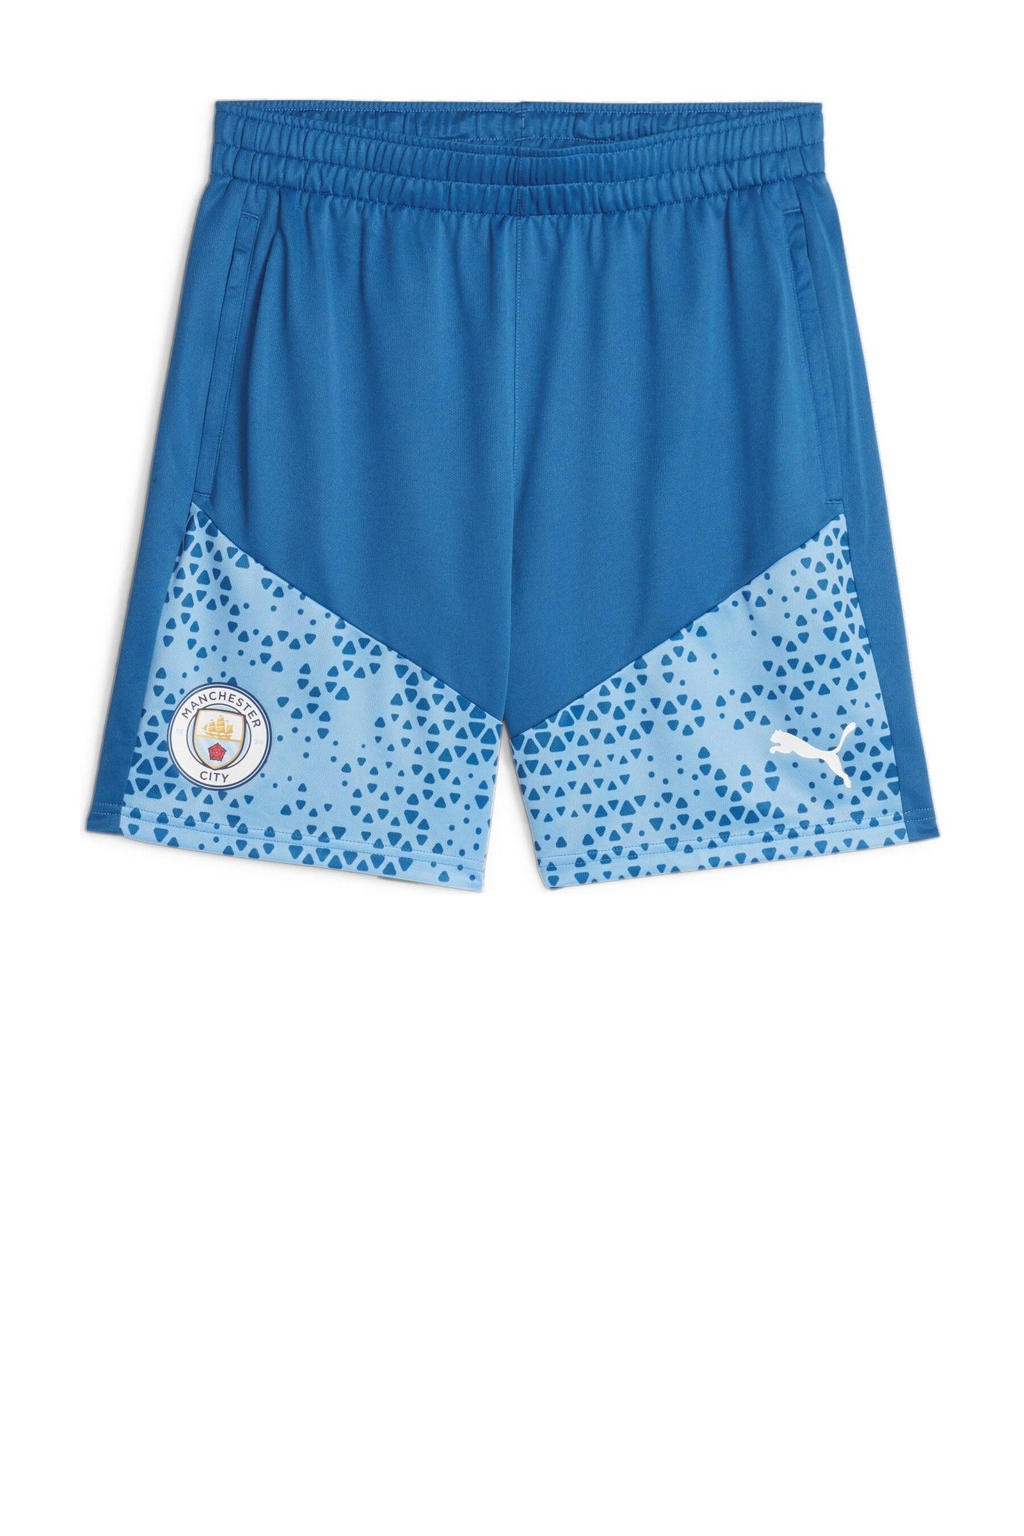 Blauwe heren Puma Senior Manchester City voetbalshort van polyester met regular fit, elastische tailleband met koord en logo dessin